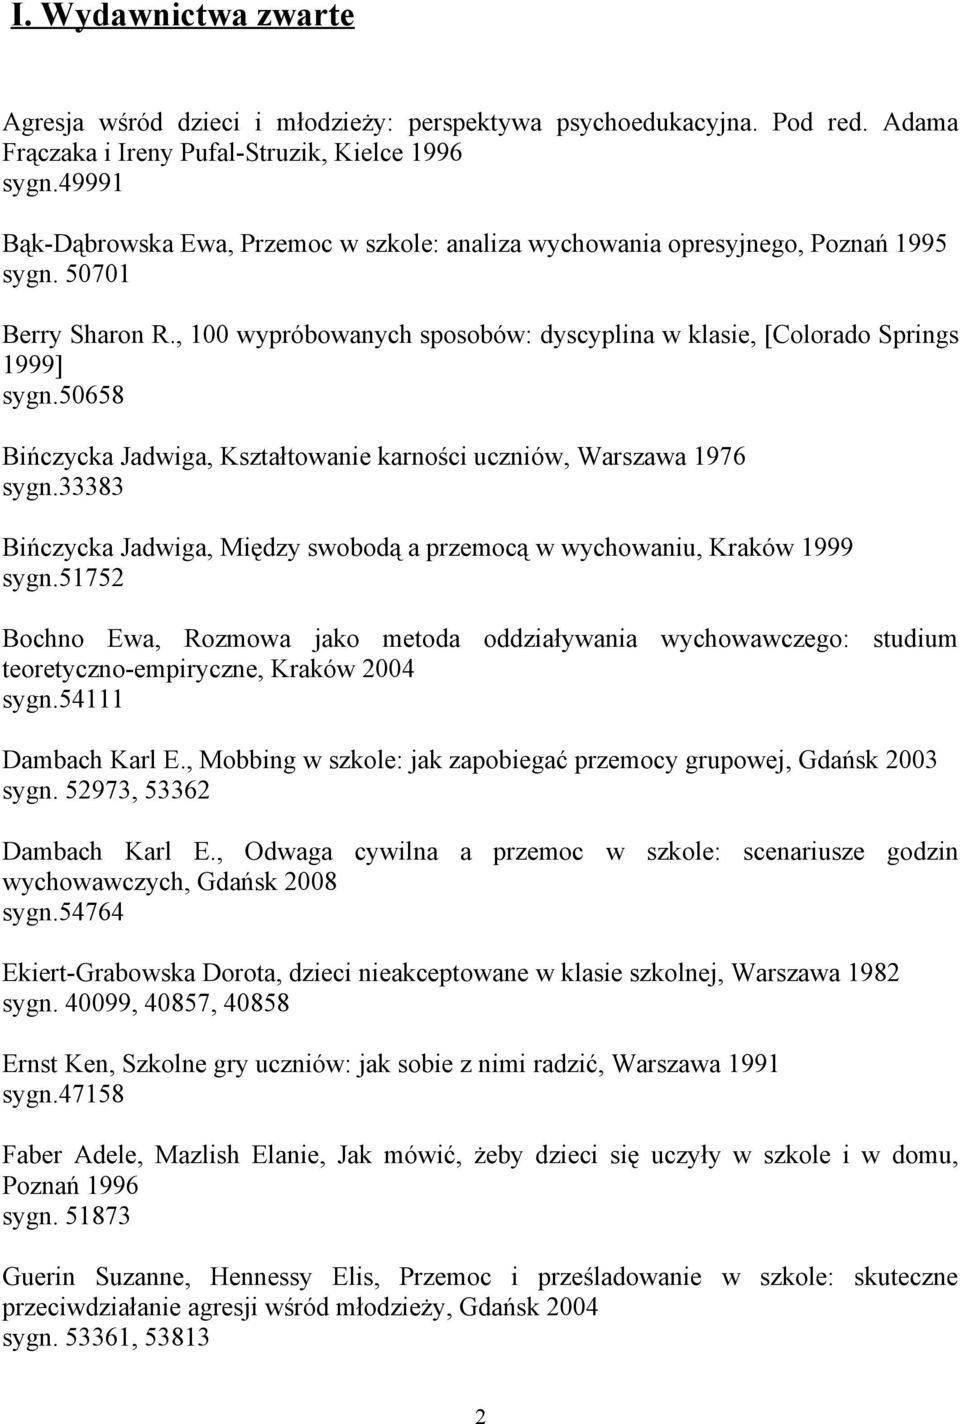 50658 Bińczycka Jadwiga, Kształtowanie karności uczniów, Warszawa 1976 sygn.33383 Bińczycka Jadwiga, Między swobodą a przemocą w wychowaniu, Kraków 1999 sygn.